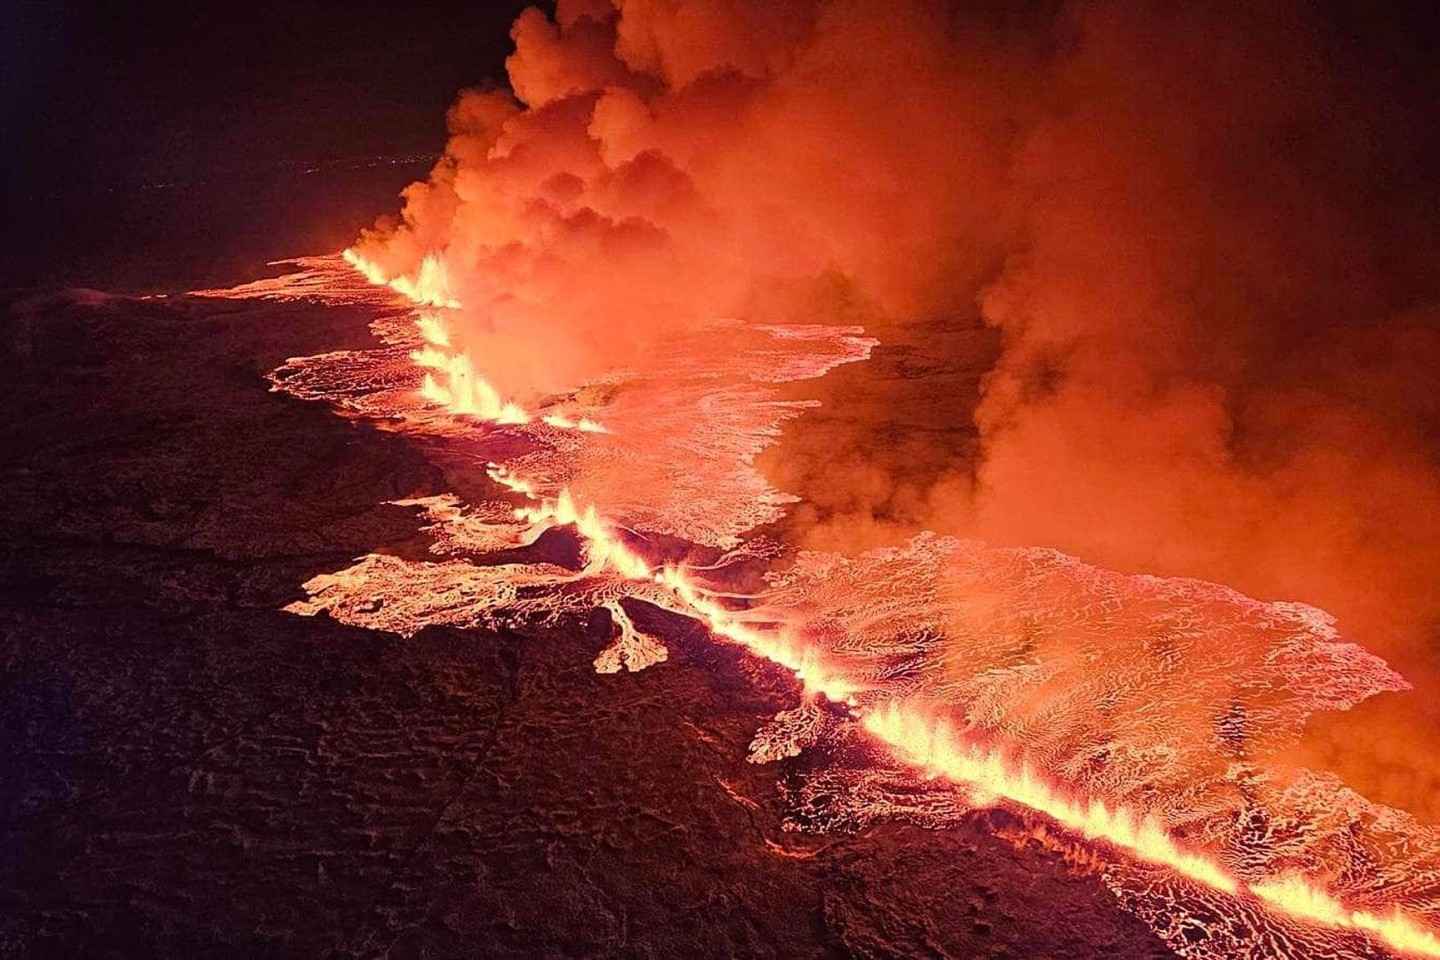 Magma strömt bei einem vergangenen vulkanischen Ausbruch in der Nähe von Grindavík aus einer Erdspalte.